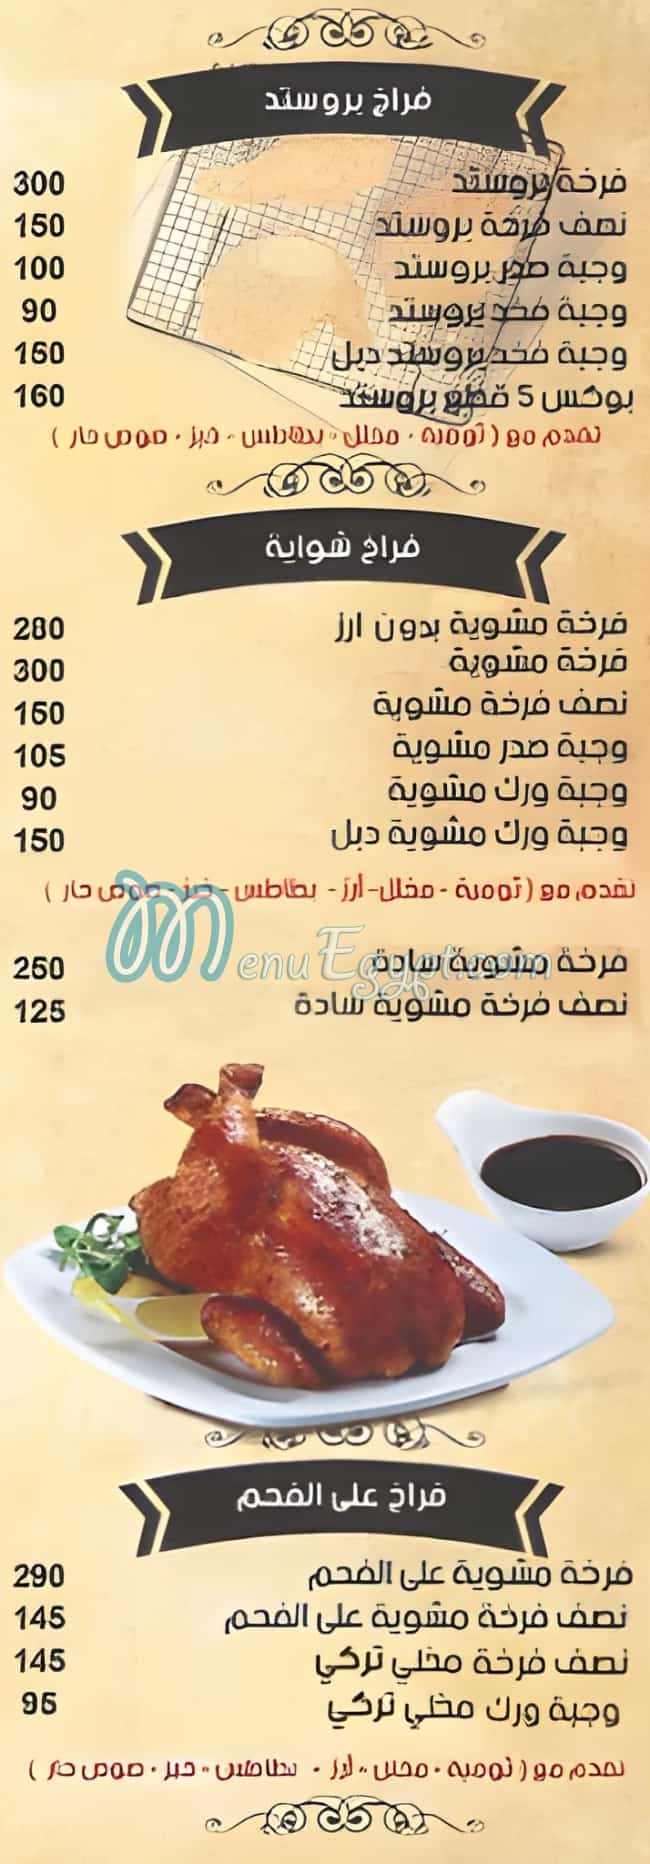 الراية للمأكولات السورية مصر الخط الساخن